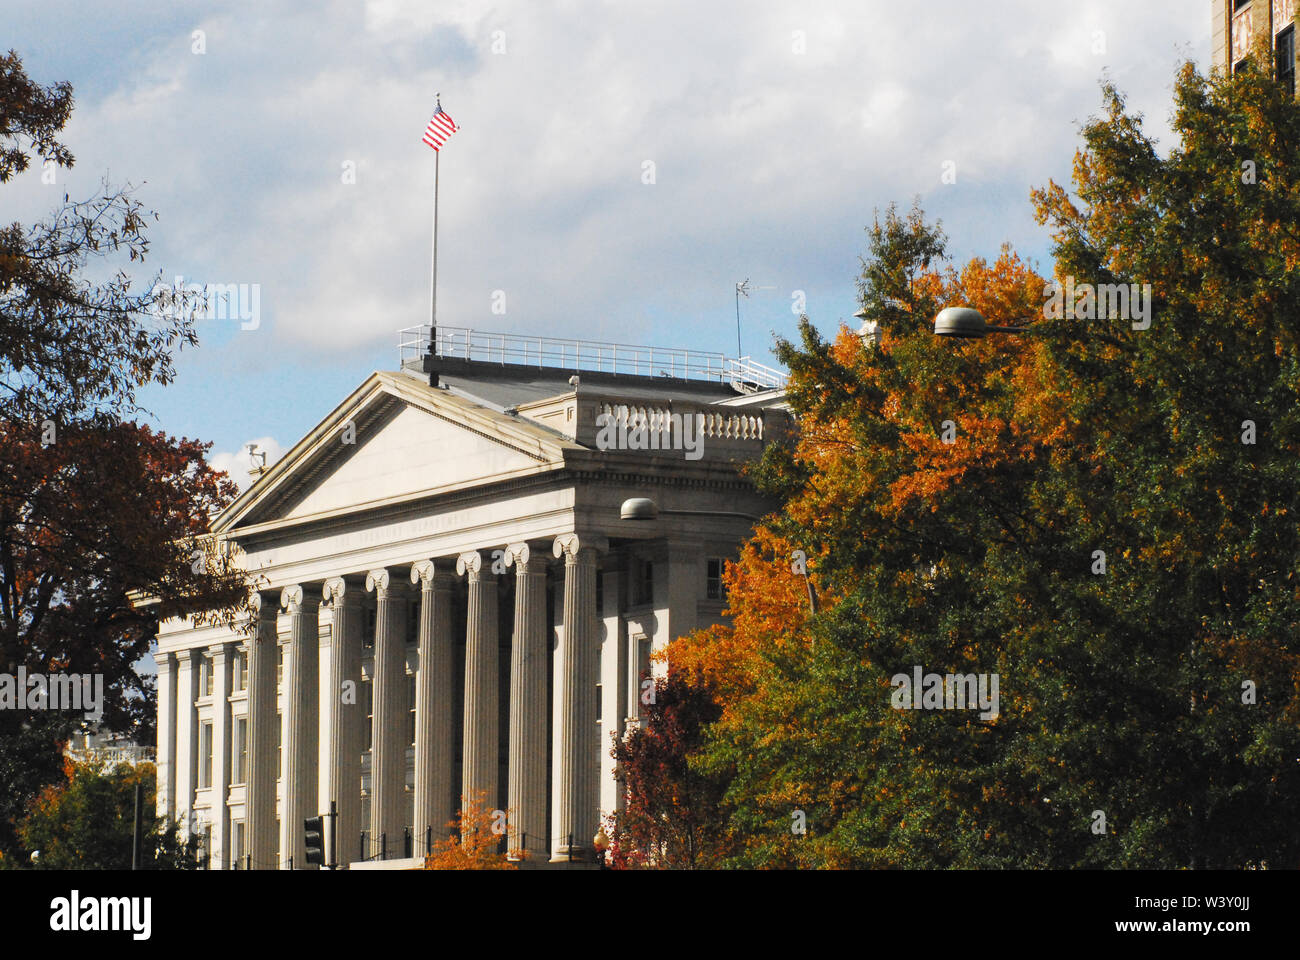 Neo-klassizistische Architektur des Treasury Gebäudes im Herbst Farben in Washington DC, USA umgeben. Beachten Sie die US-Flagge hoch. Stockfoto